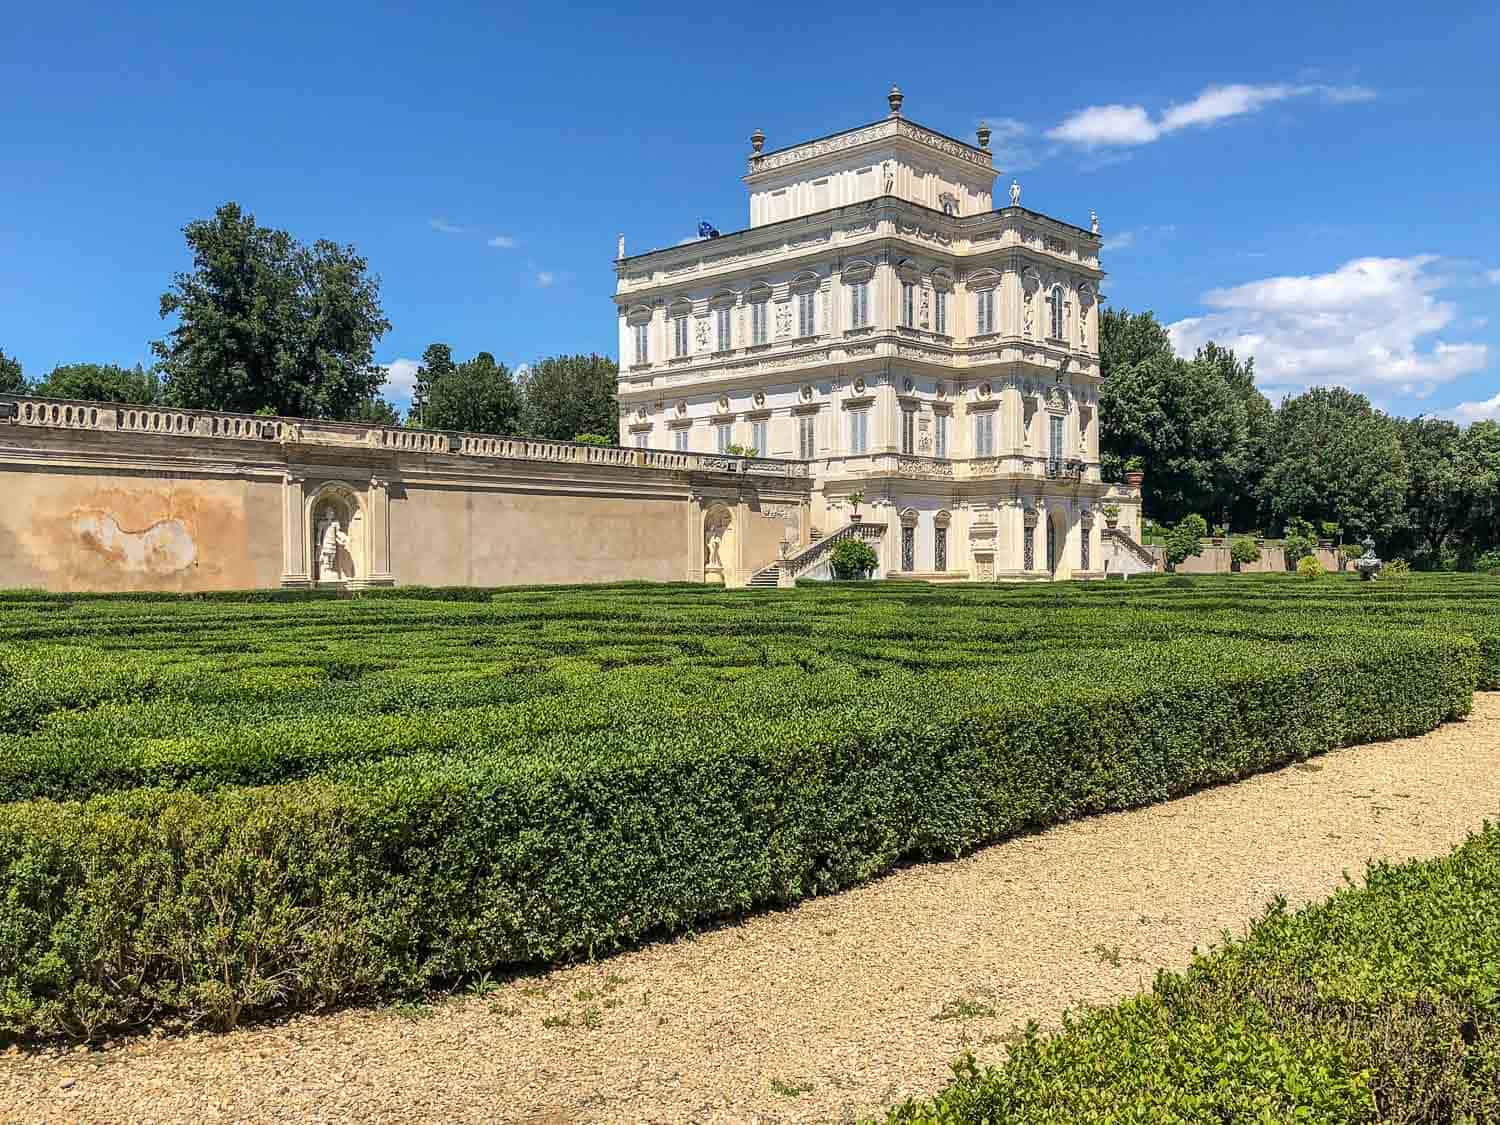 Villino Algardi in the Villa Doria Pamphili park in Monteverde, Rome